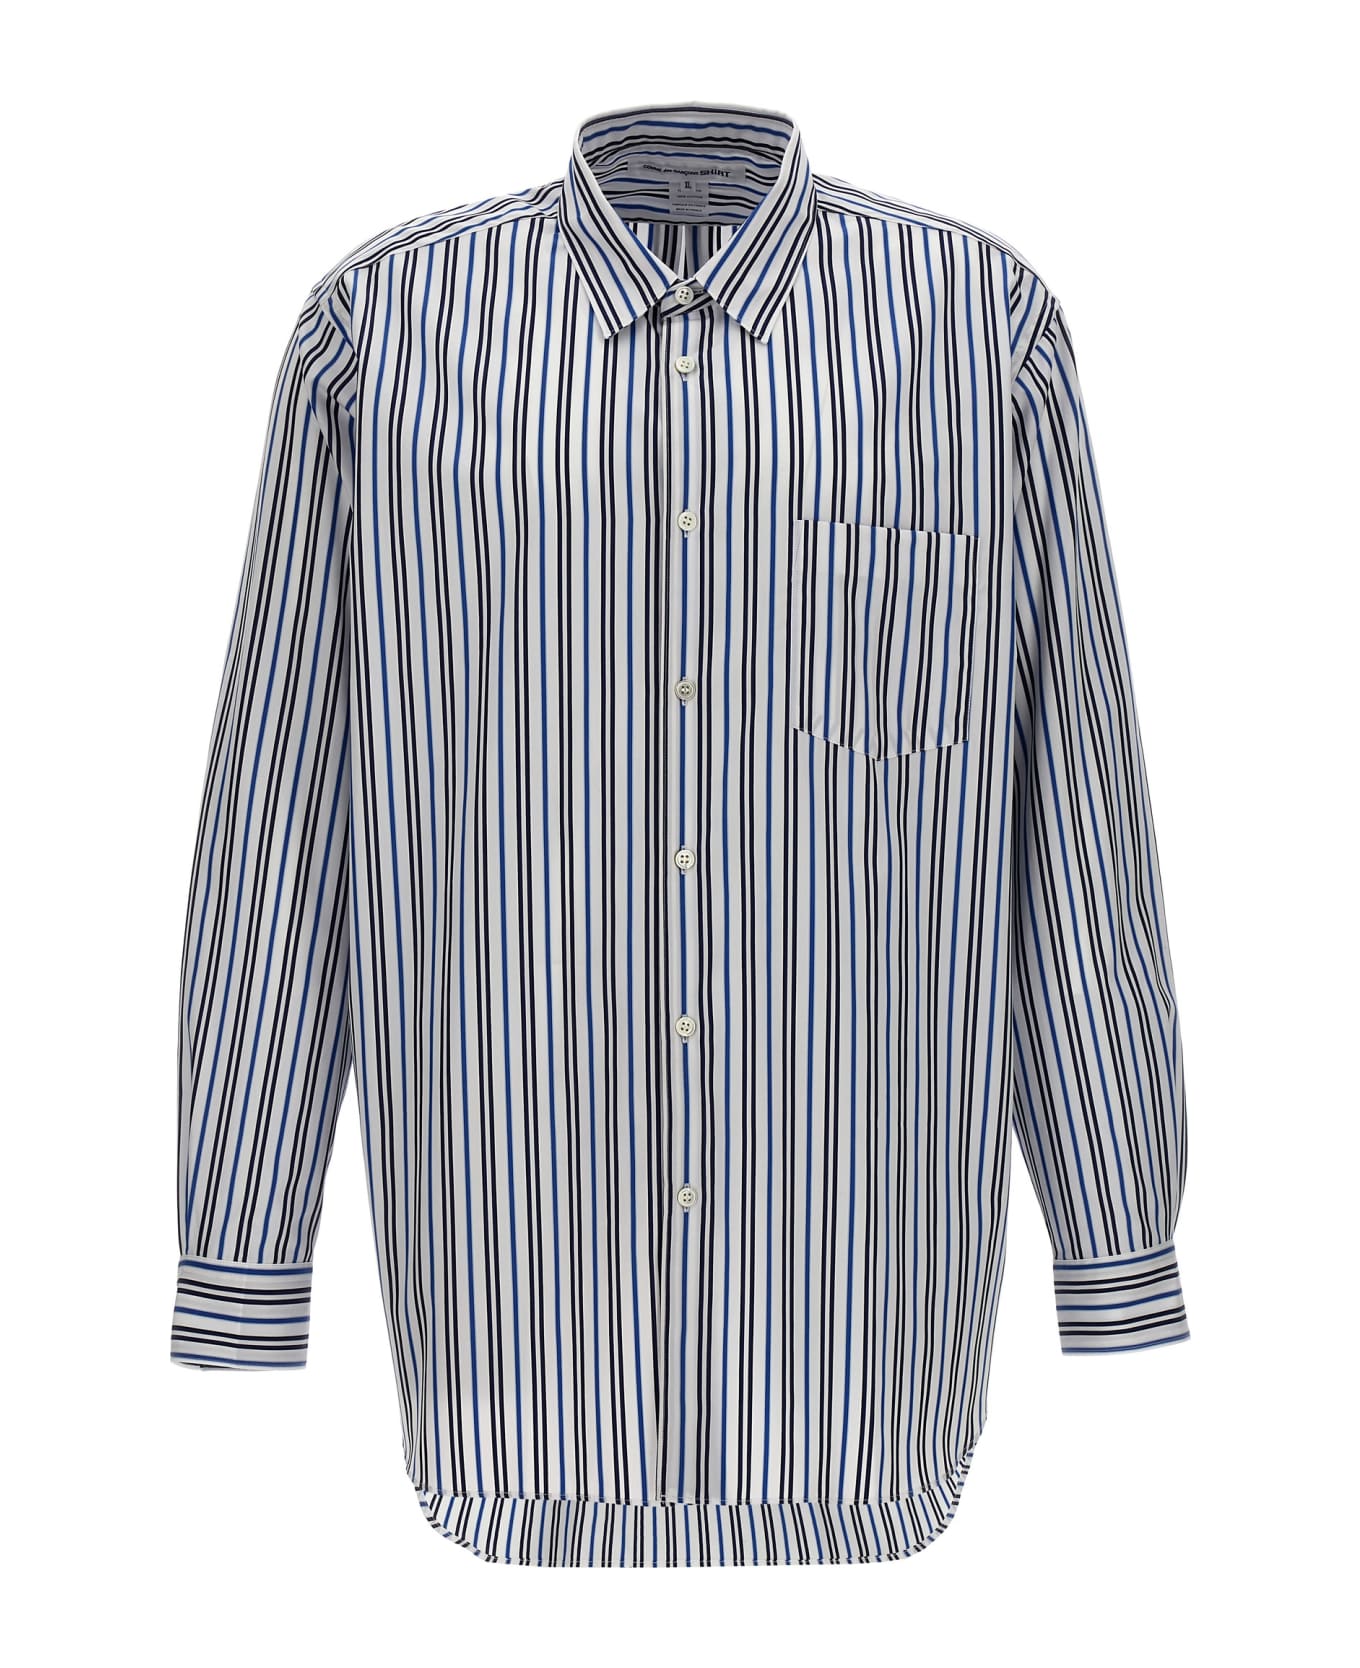 Comme des Garçons Shirt Striped Shirt - 117 STRIPE